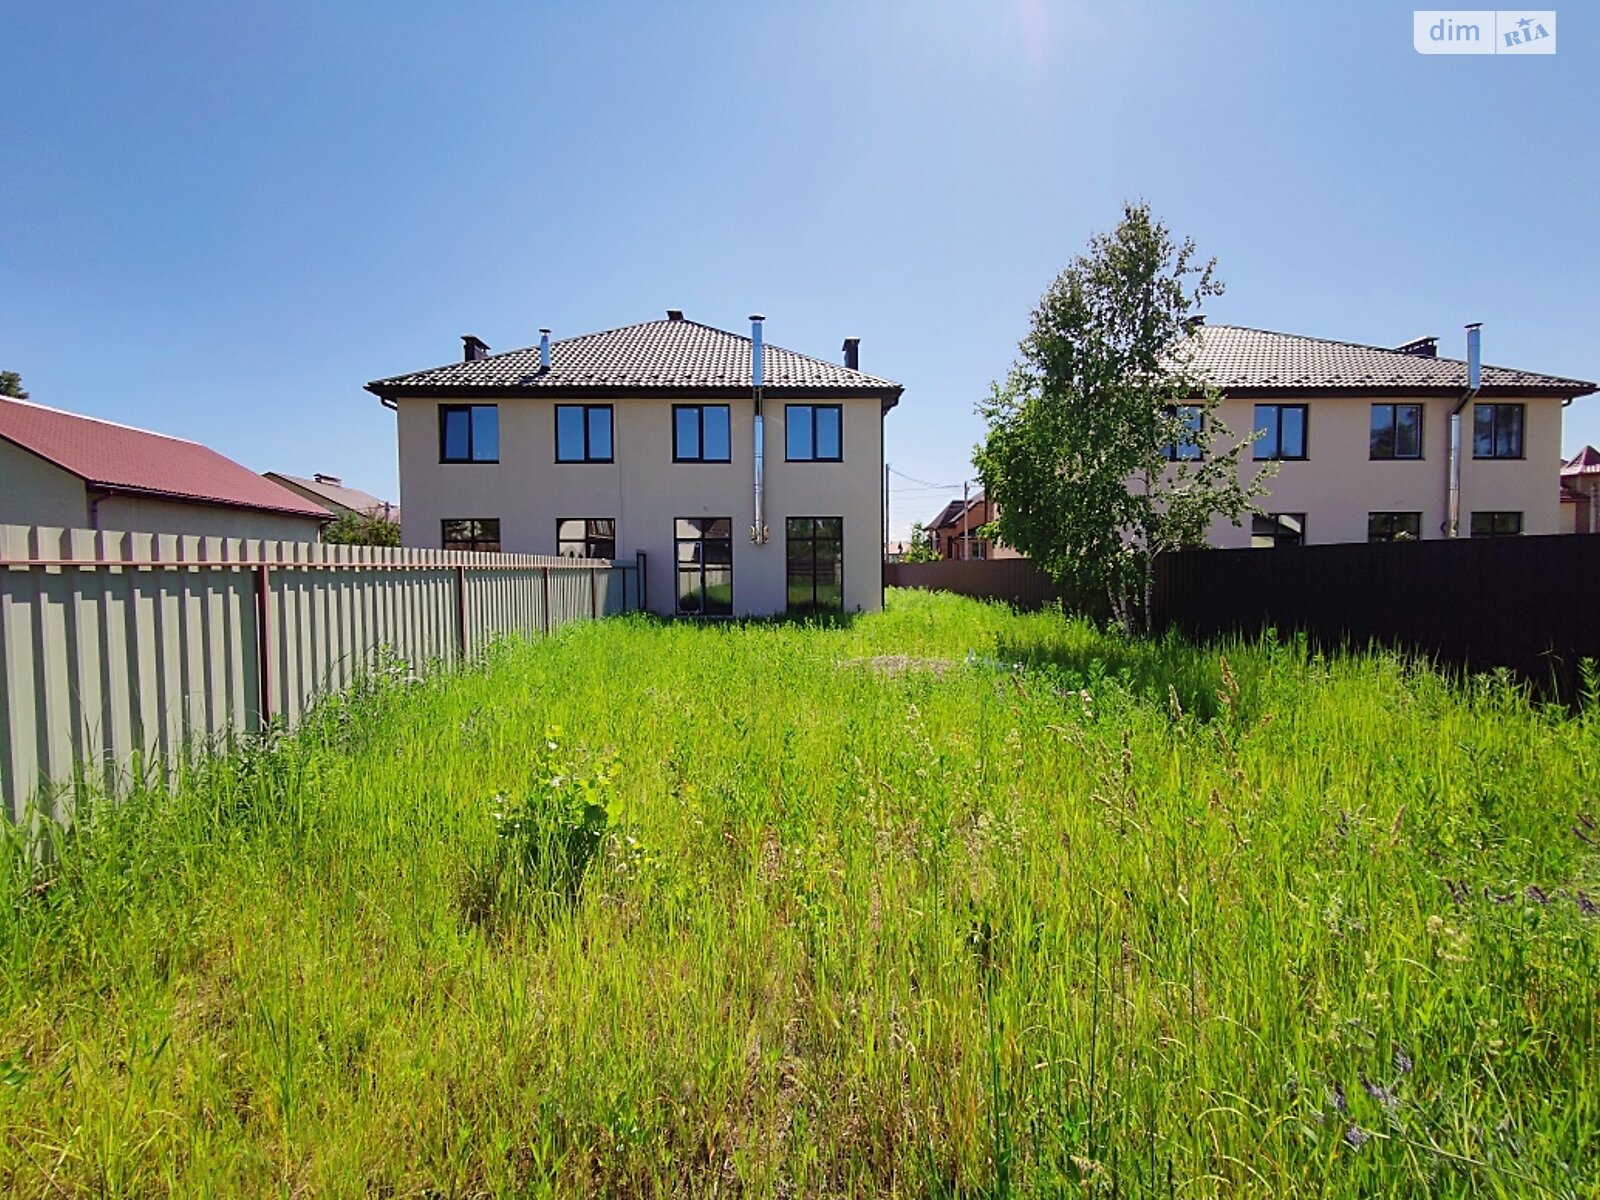 Продажа части дома в Ворзеле, улица Бучанская, 4 комнаты фото 1